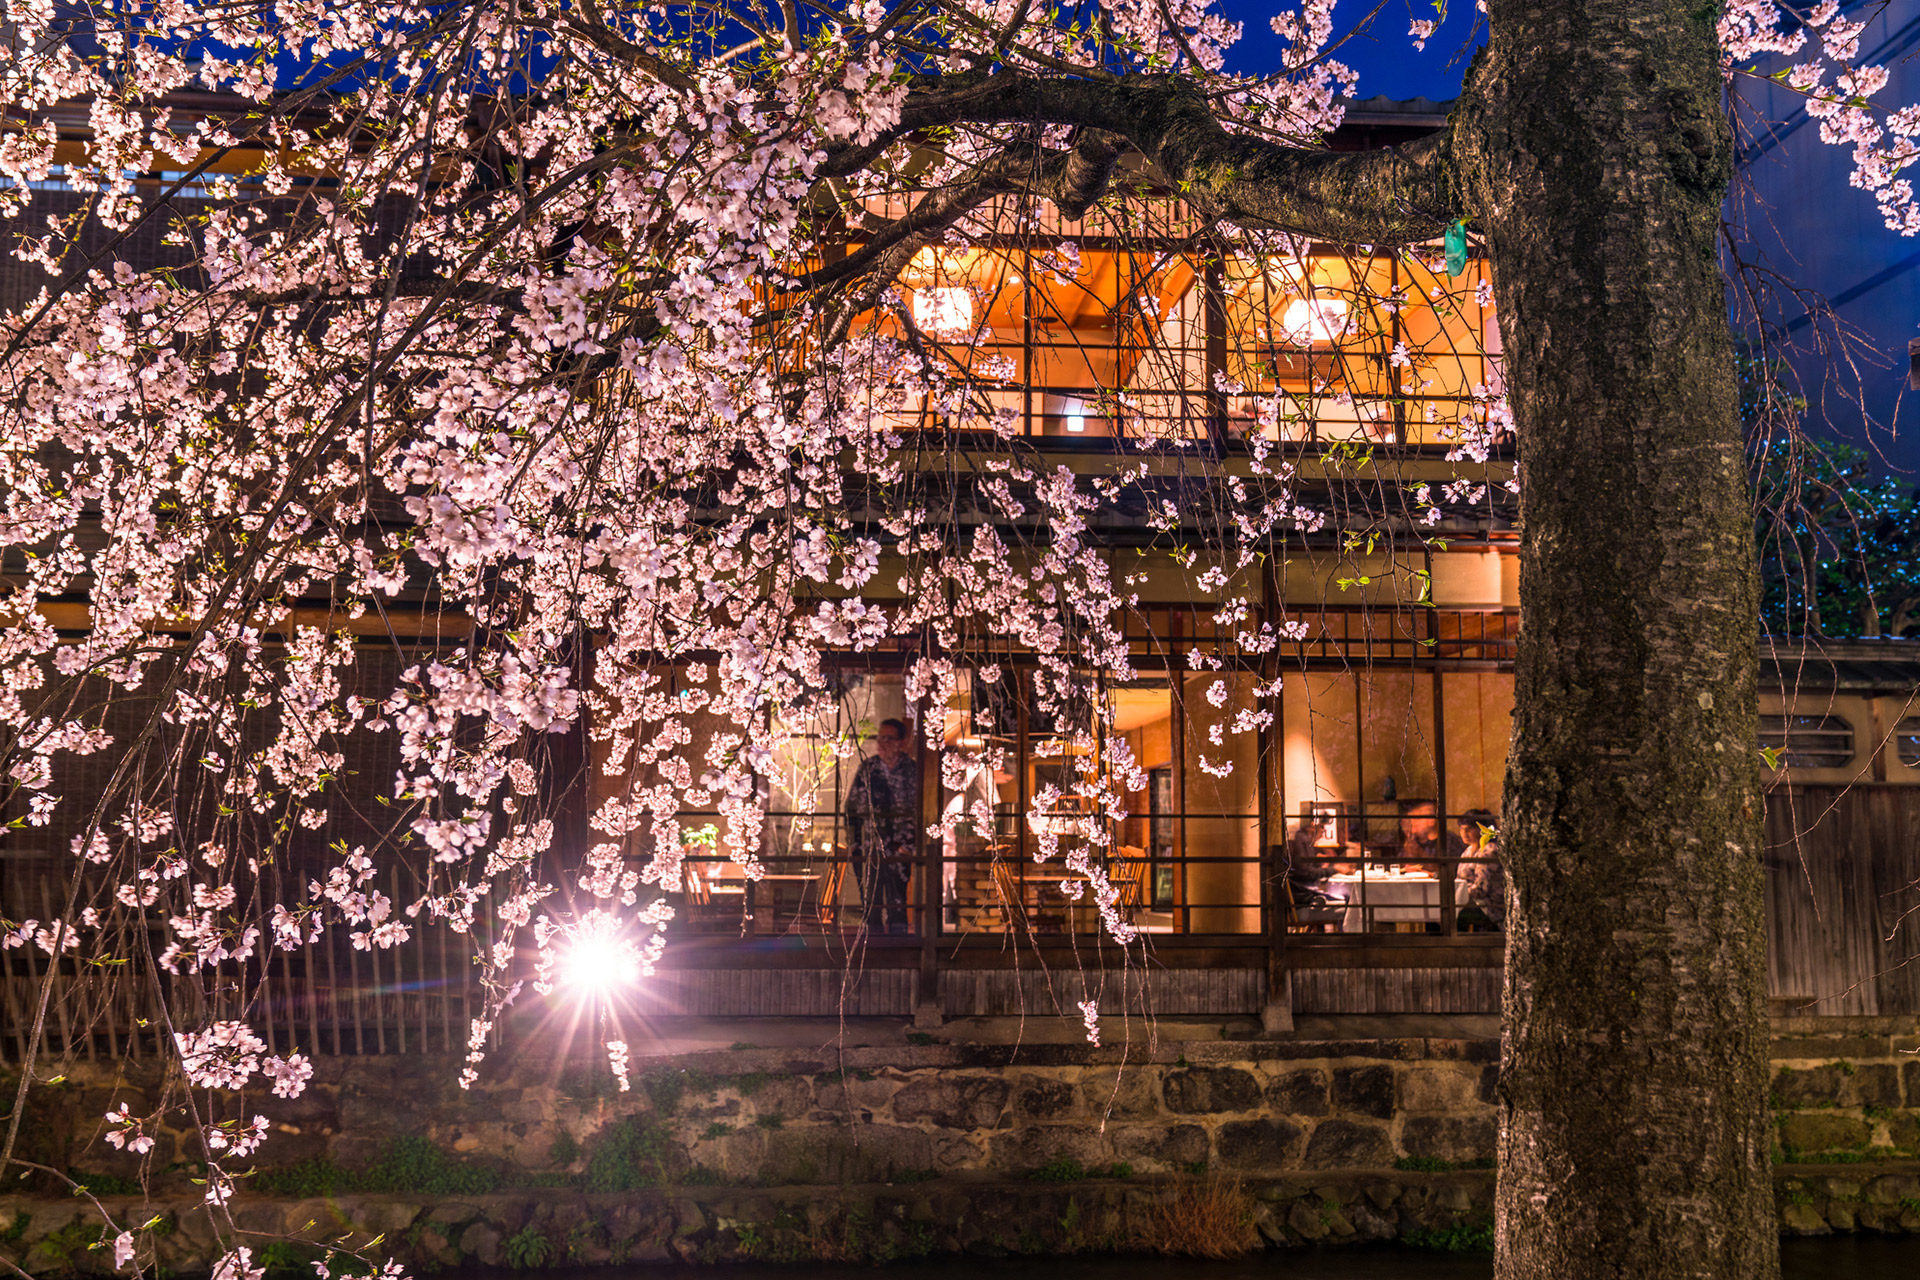 京都でしか見られない 夜に輝く桜が見られる場所とは Caedekyoto カエデ京都 紅葉と伝統美を引き継ぐバッグ